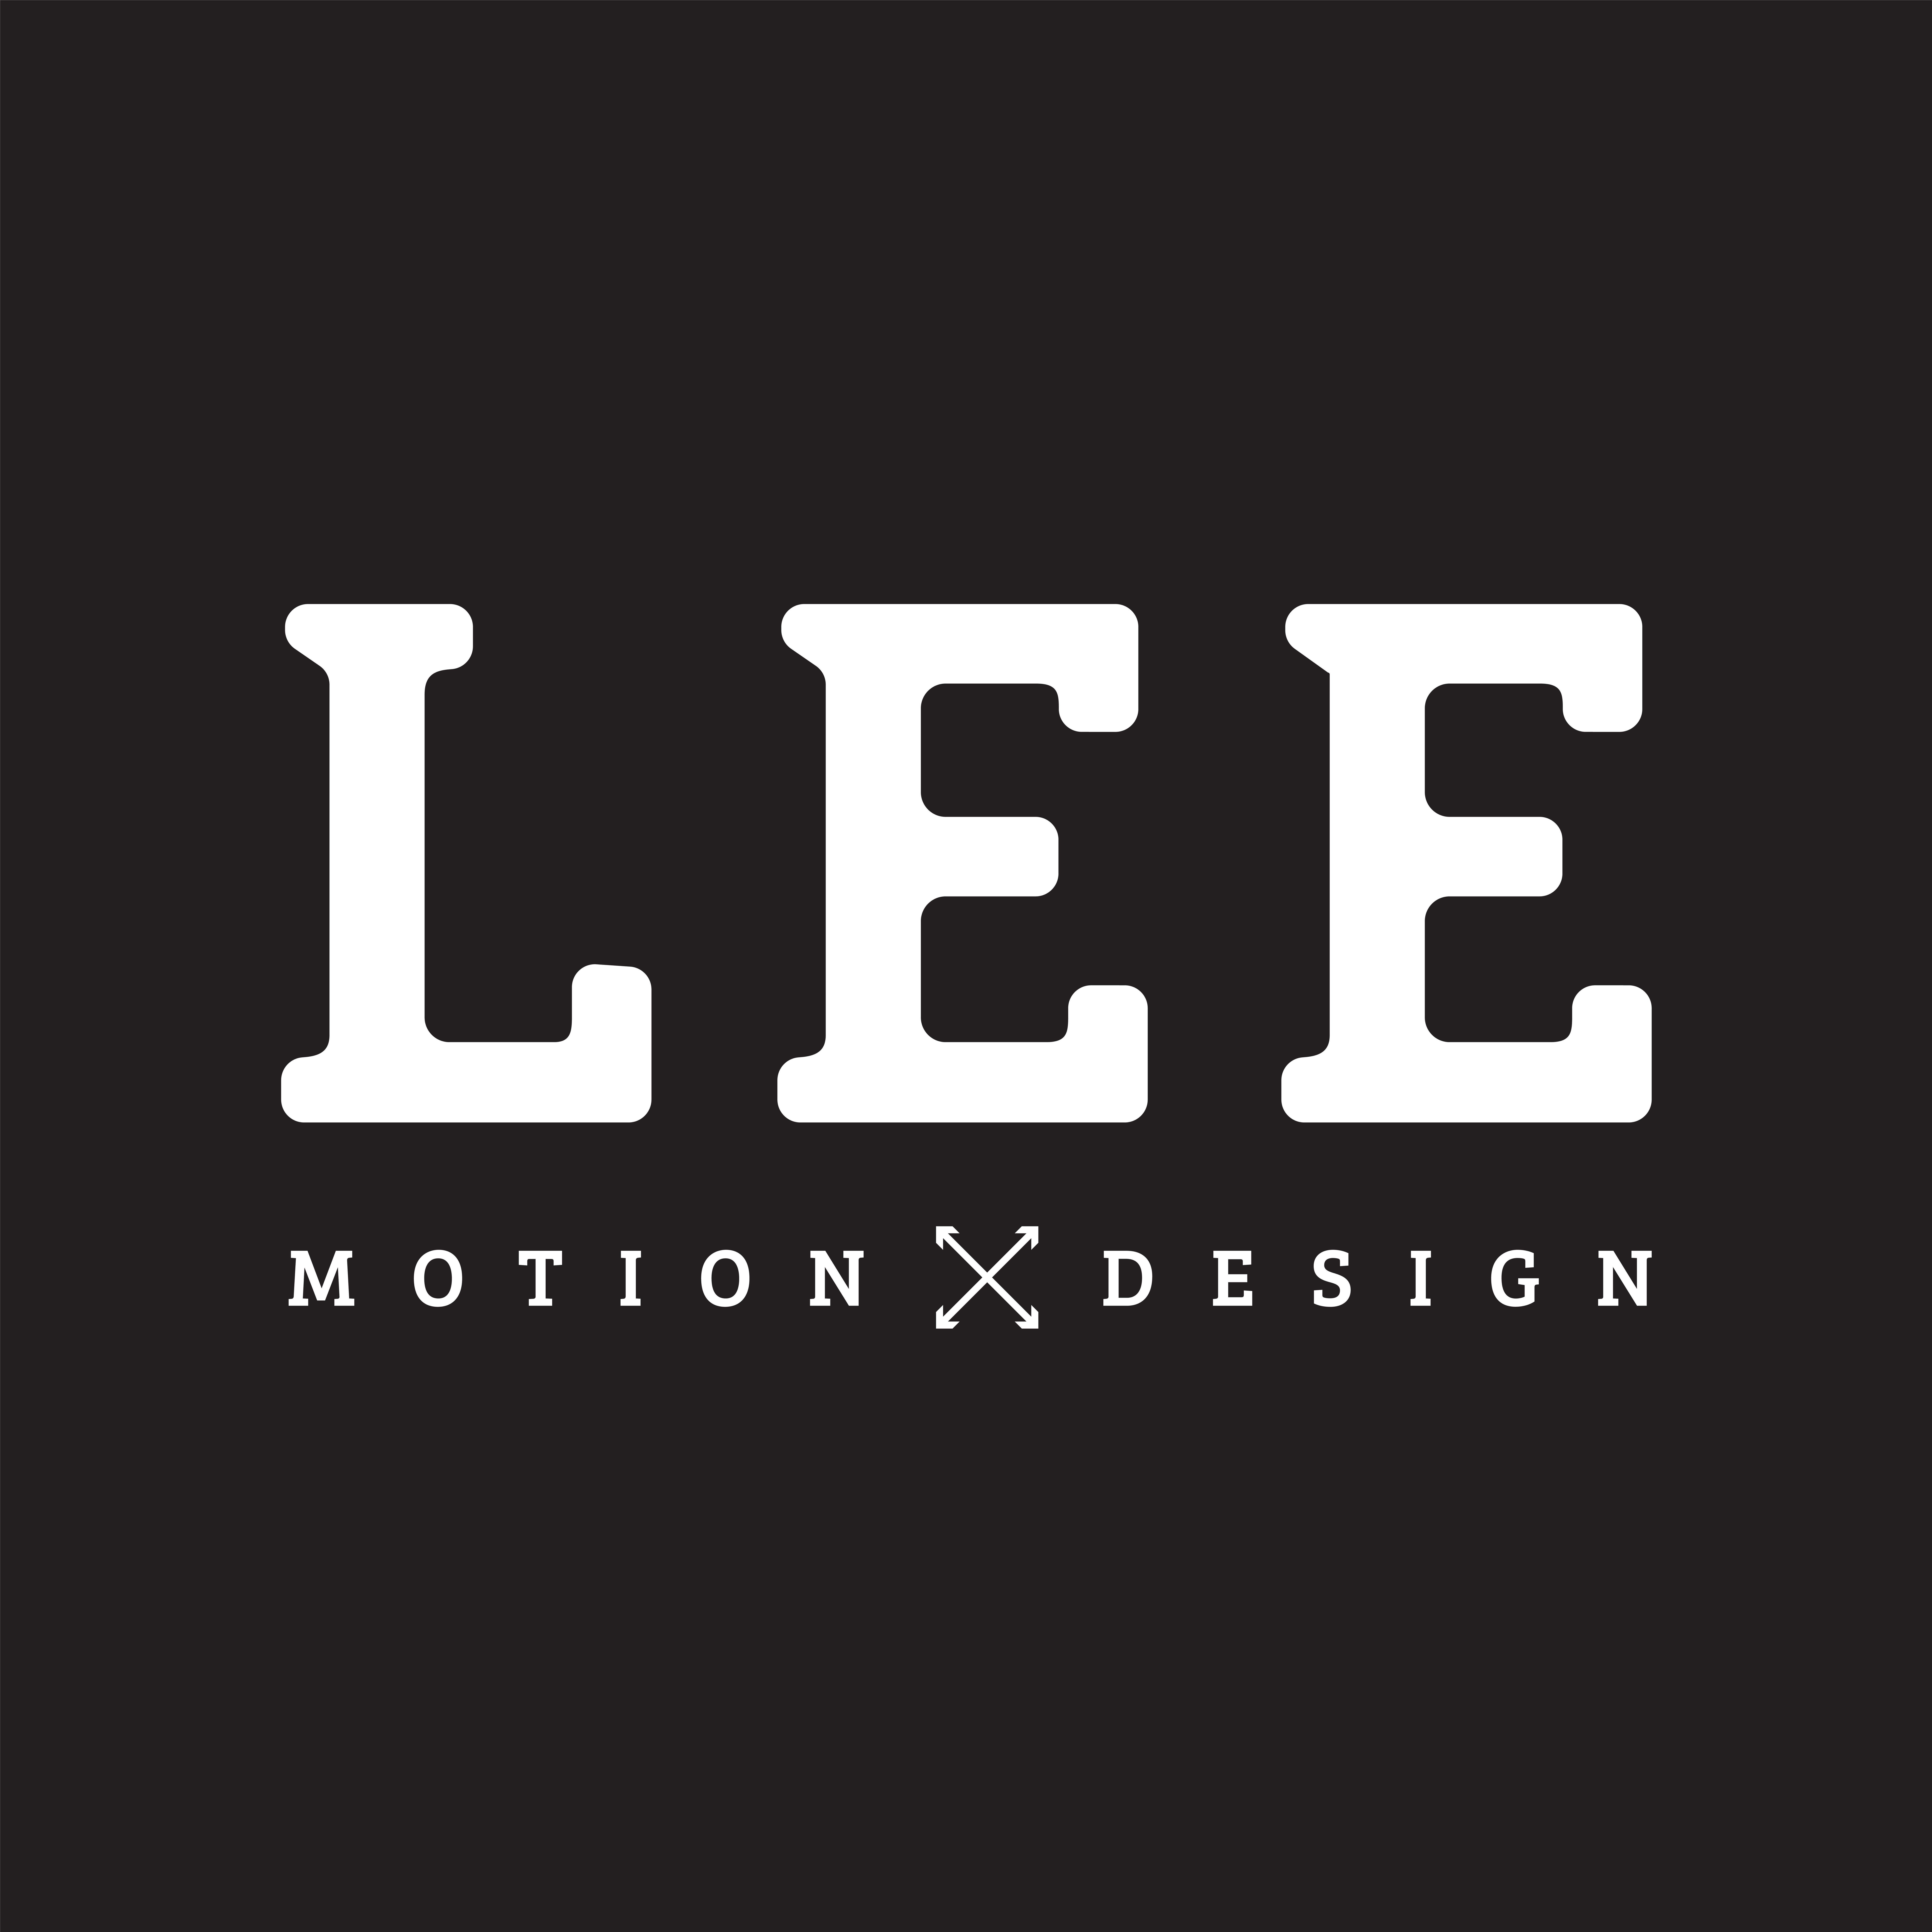 LEE MOTION X DESIGN logo